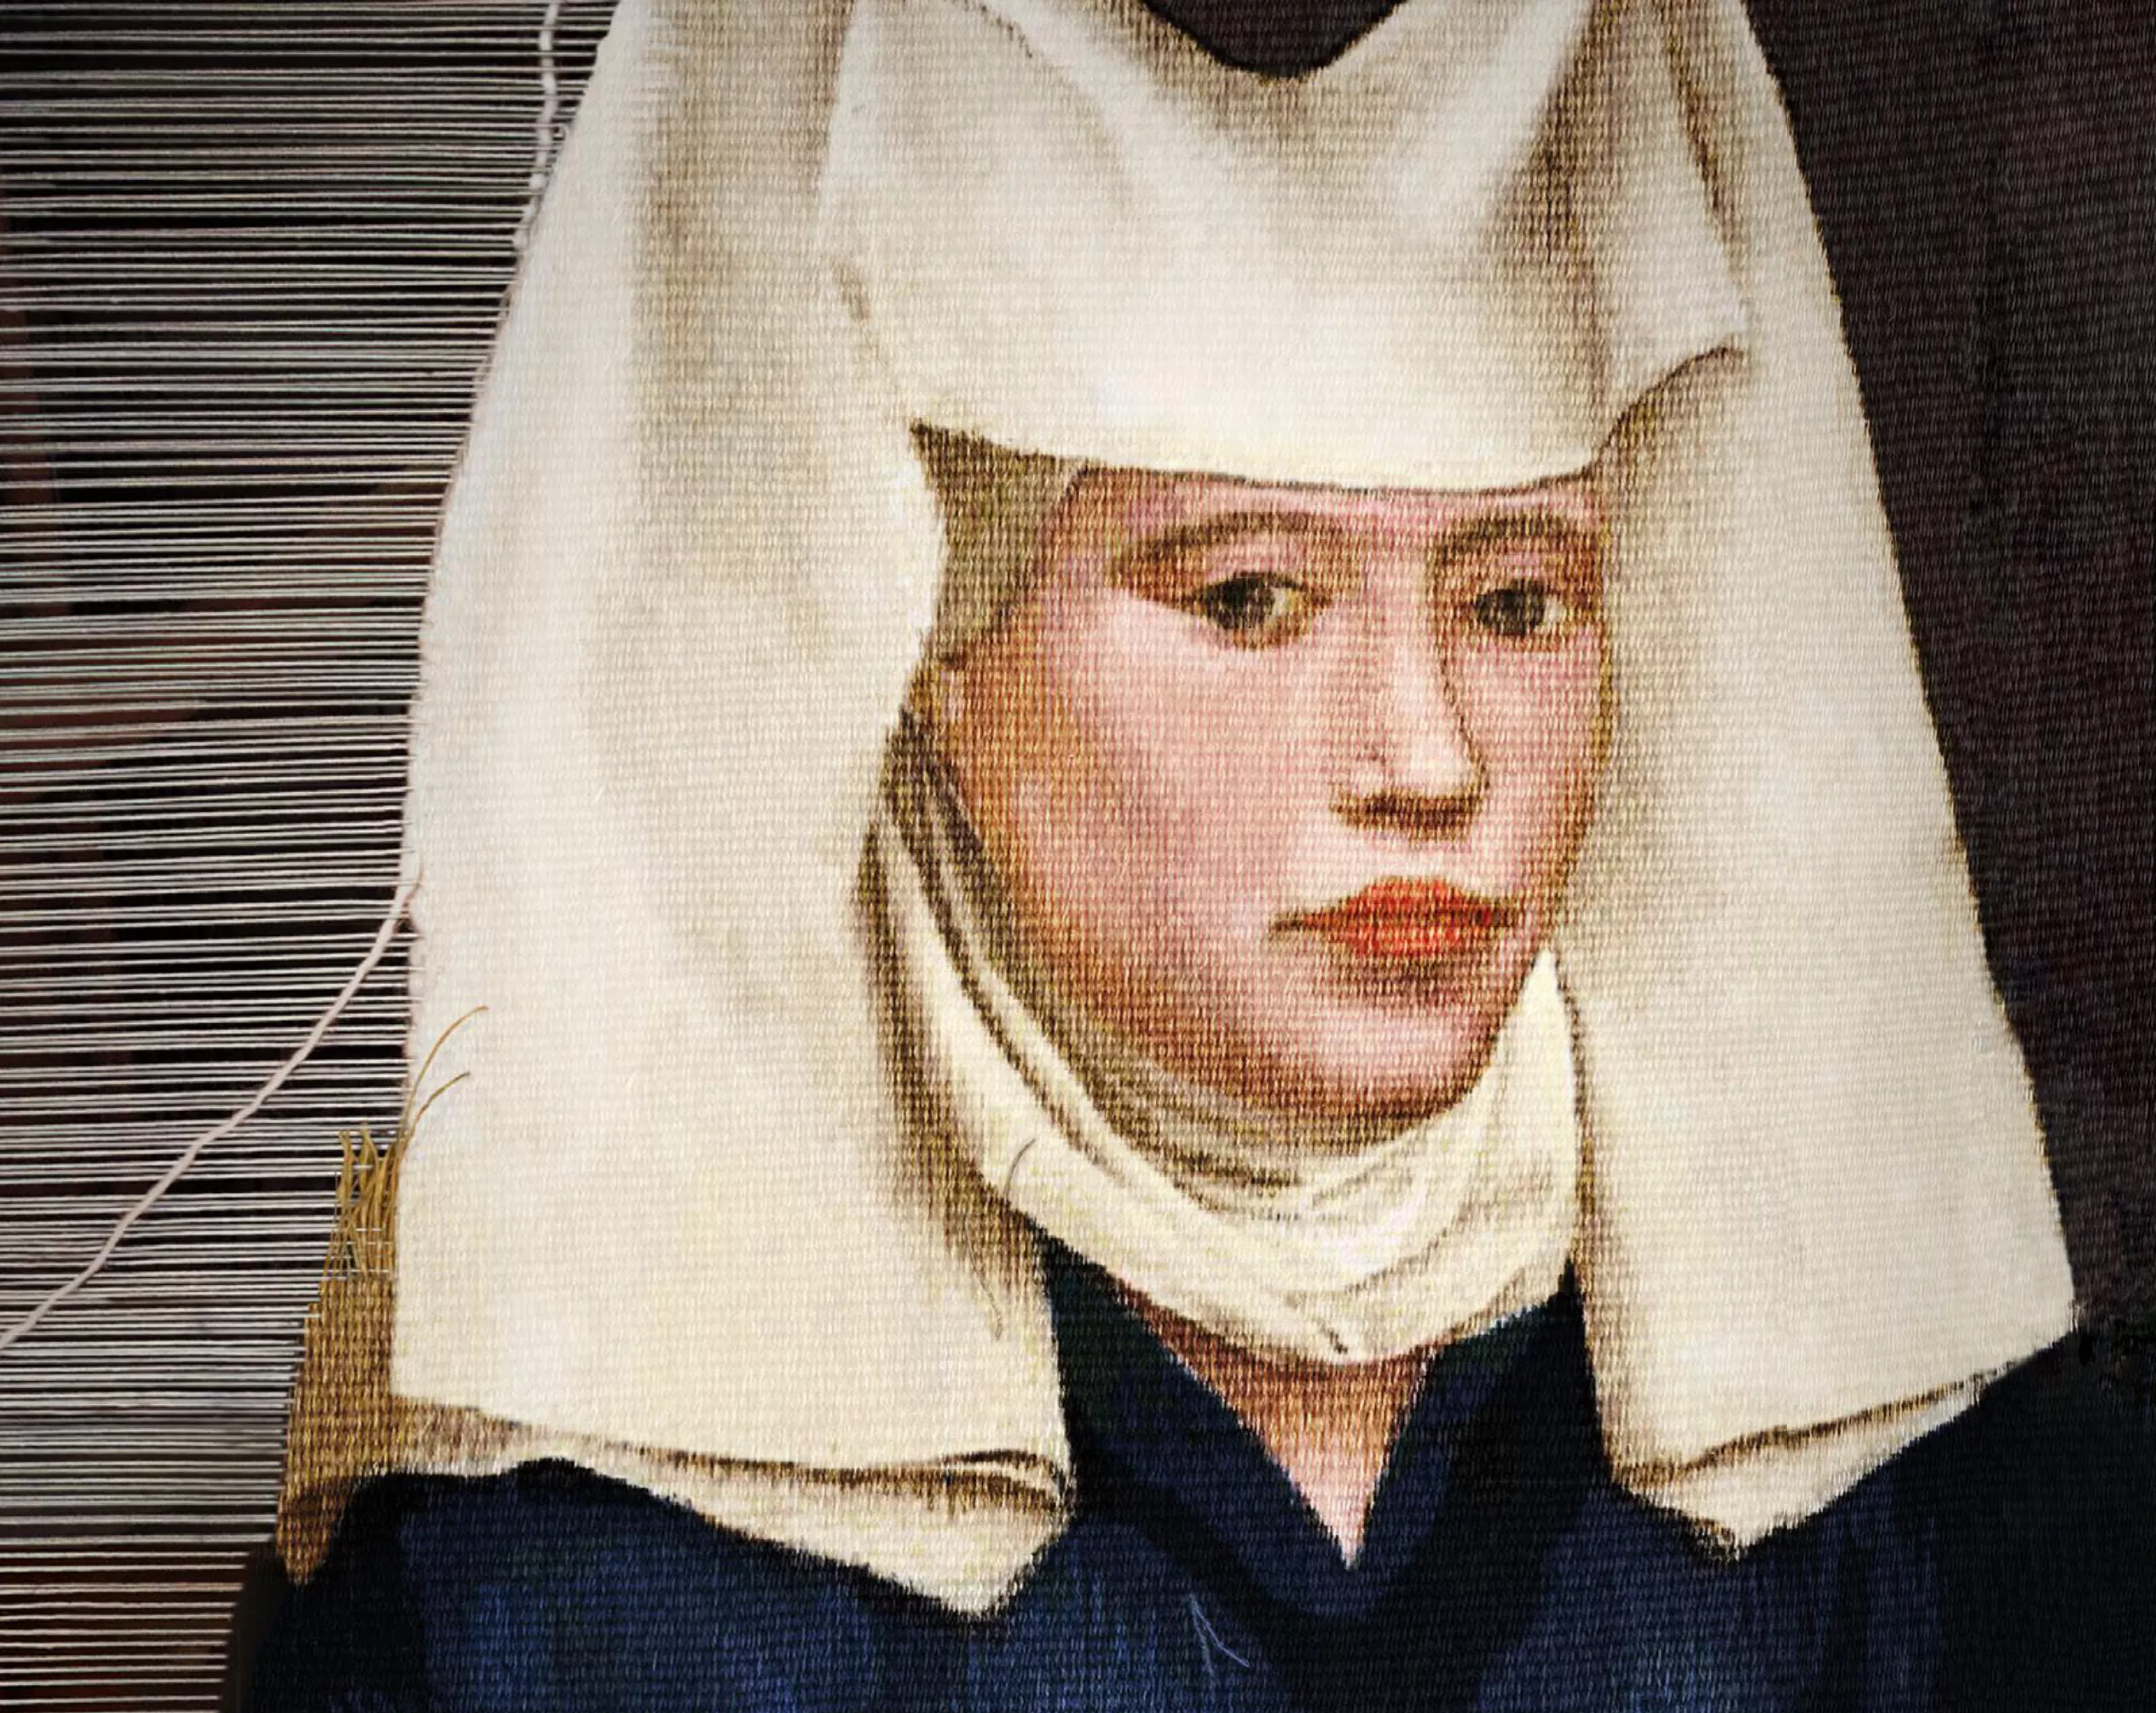 Quan es va quedar vídua, Christine de Pisan es va posar a escriure per mantenir la família. Es va convertir en la primera escriptora professional de la història de la literatura europea